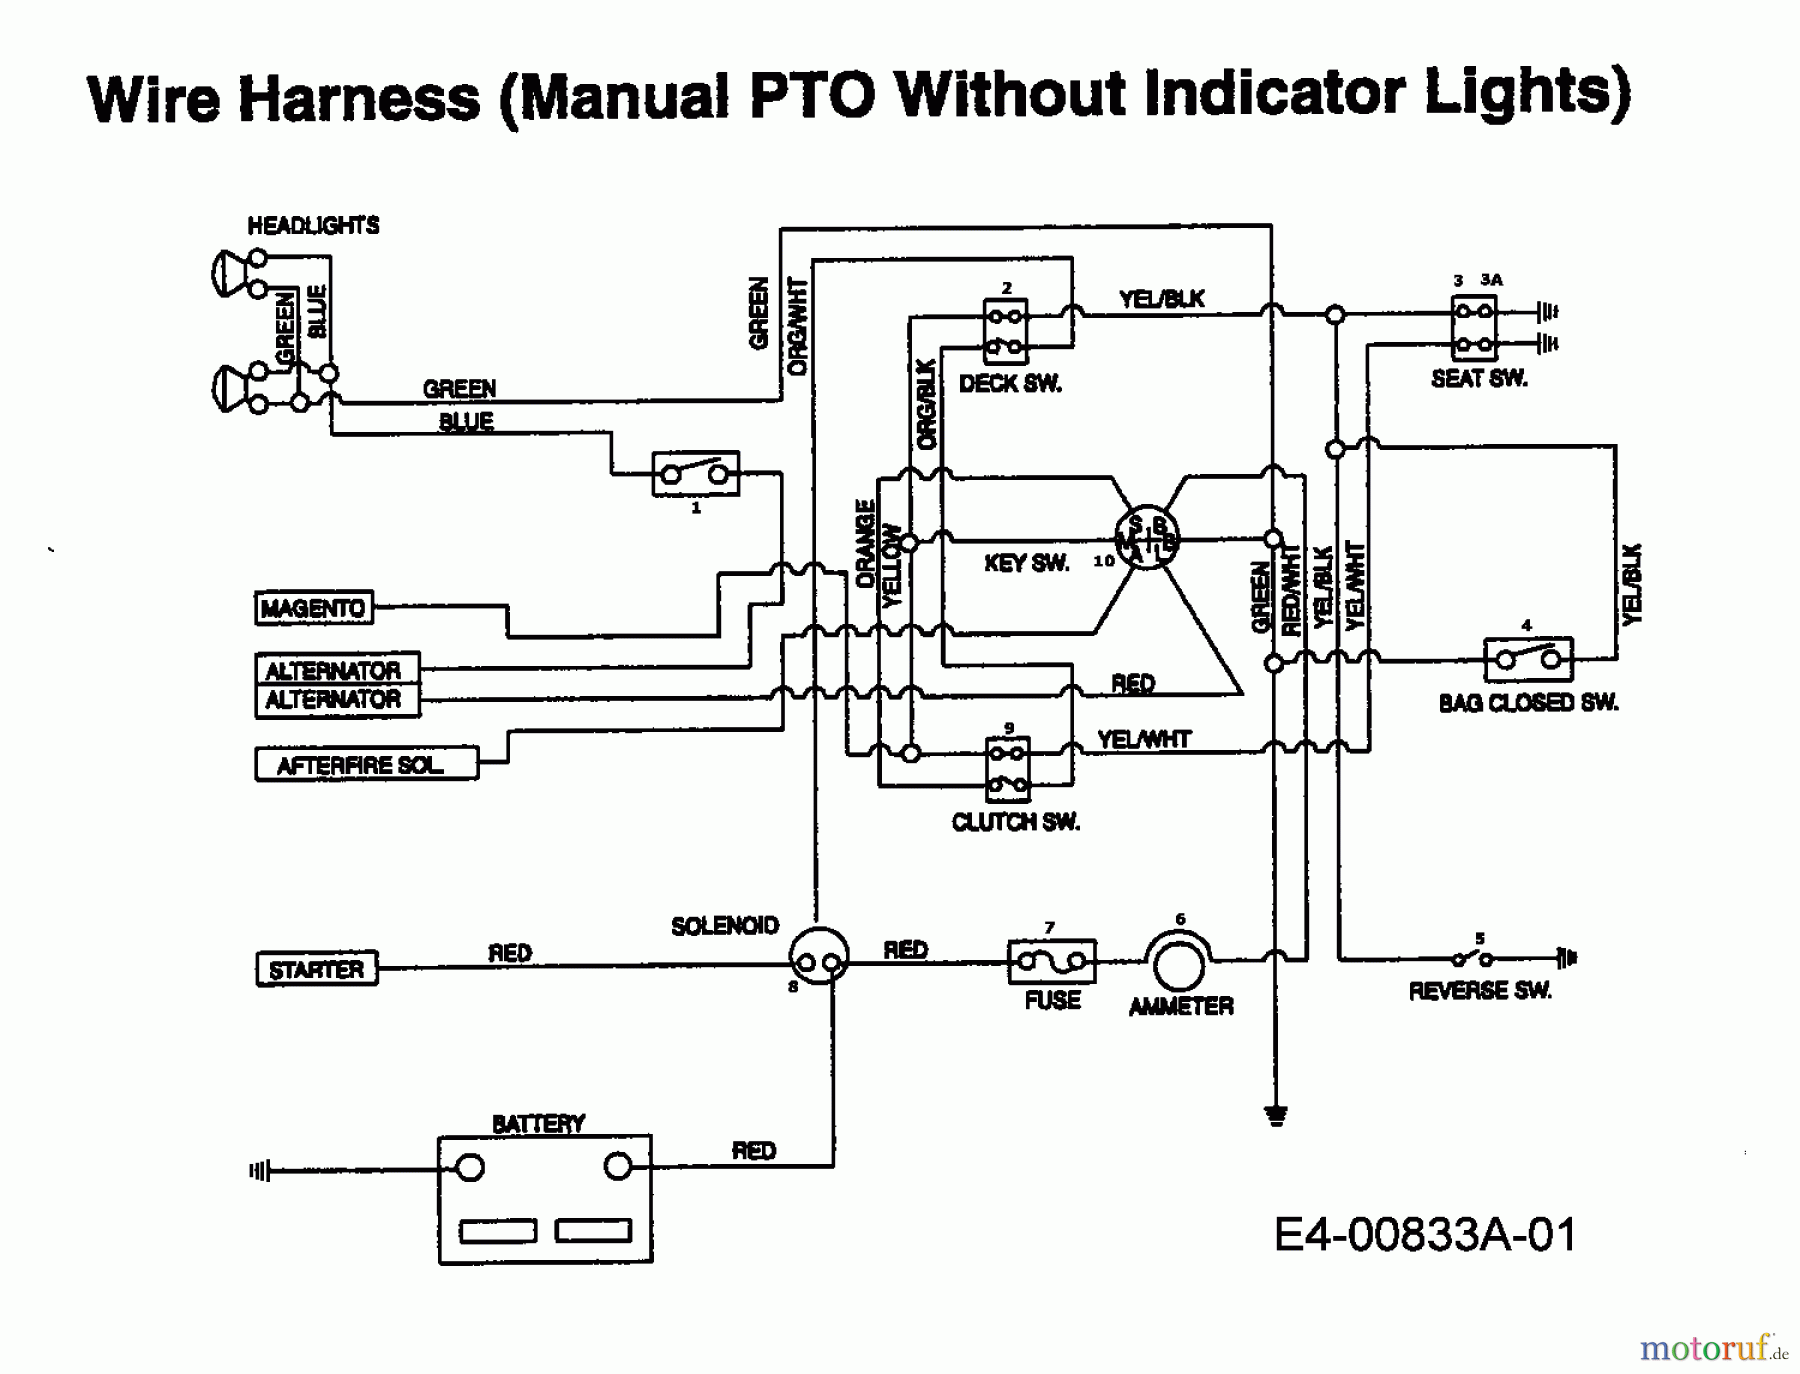  MTD Rasentraktoren IB 162 HST 13AF795N606  (1998) Schaltplan ohne Kontrolleuchten